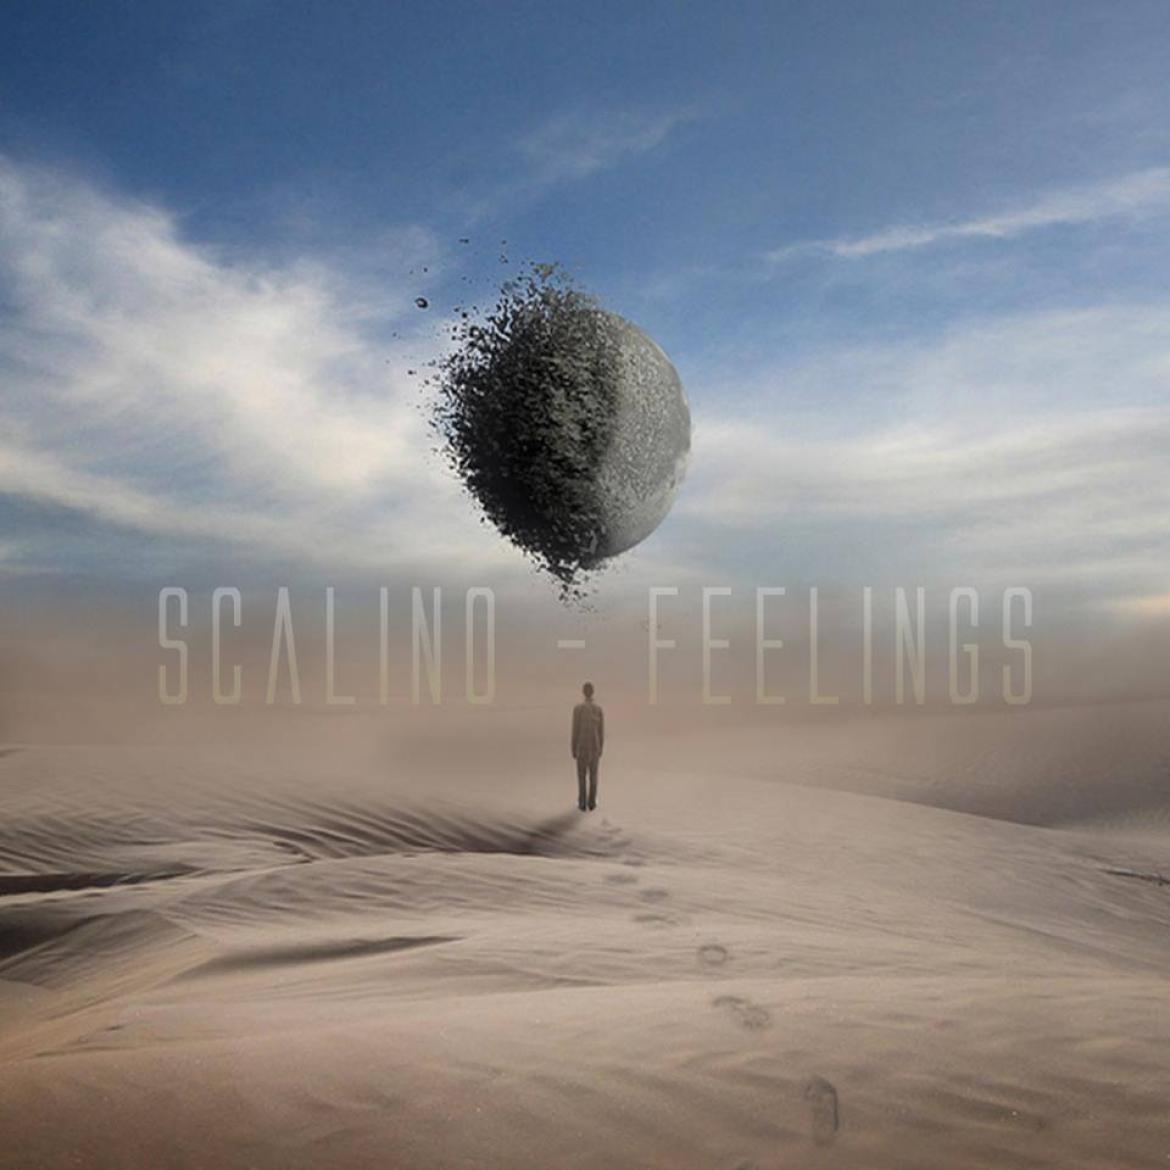 Scalino - Feelings